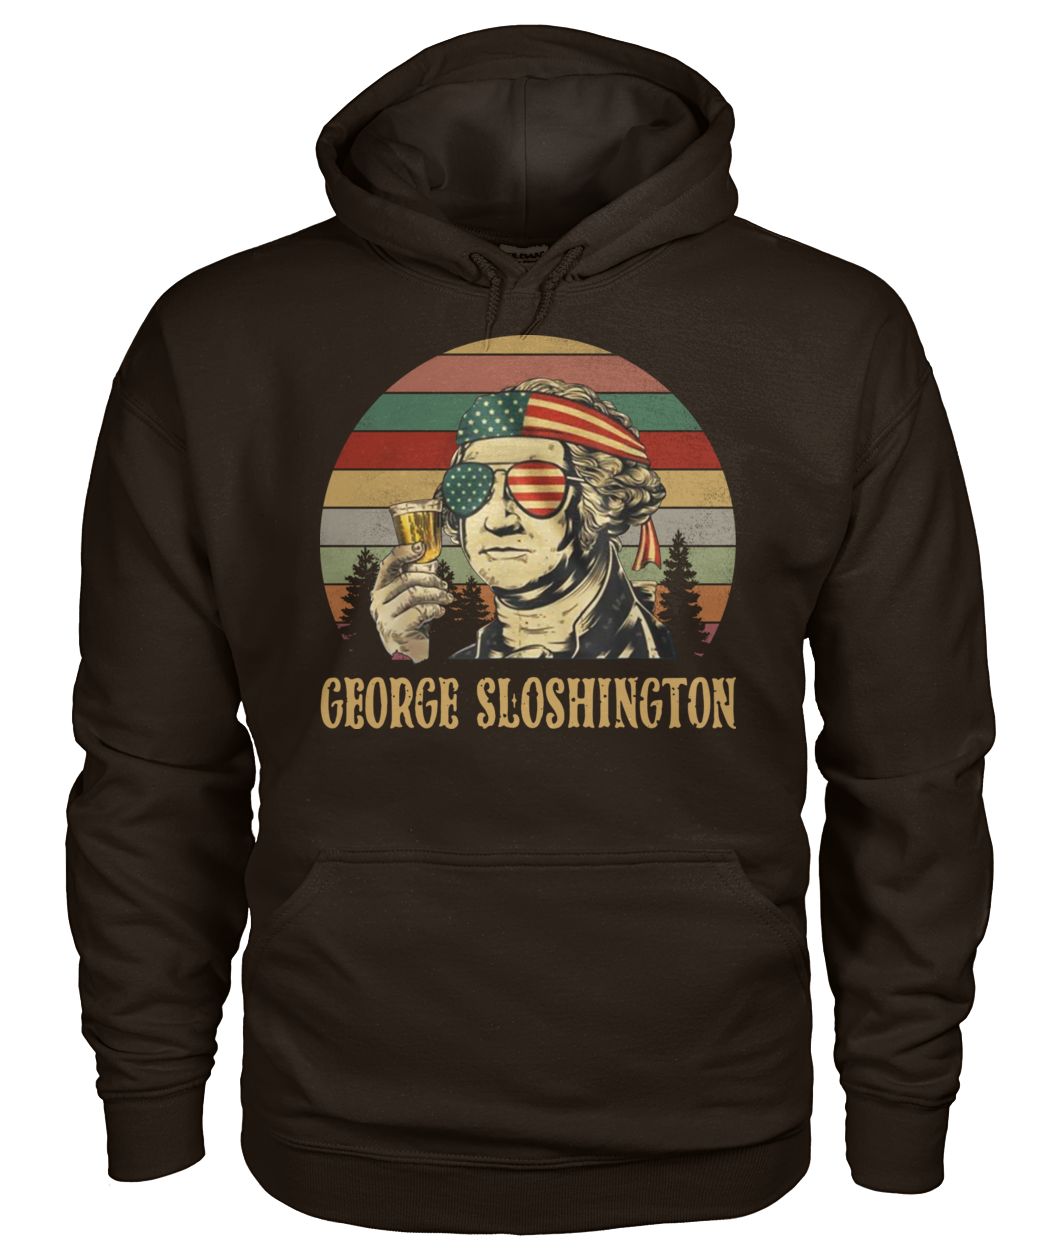 George sloshington vintage gildan hoodie